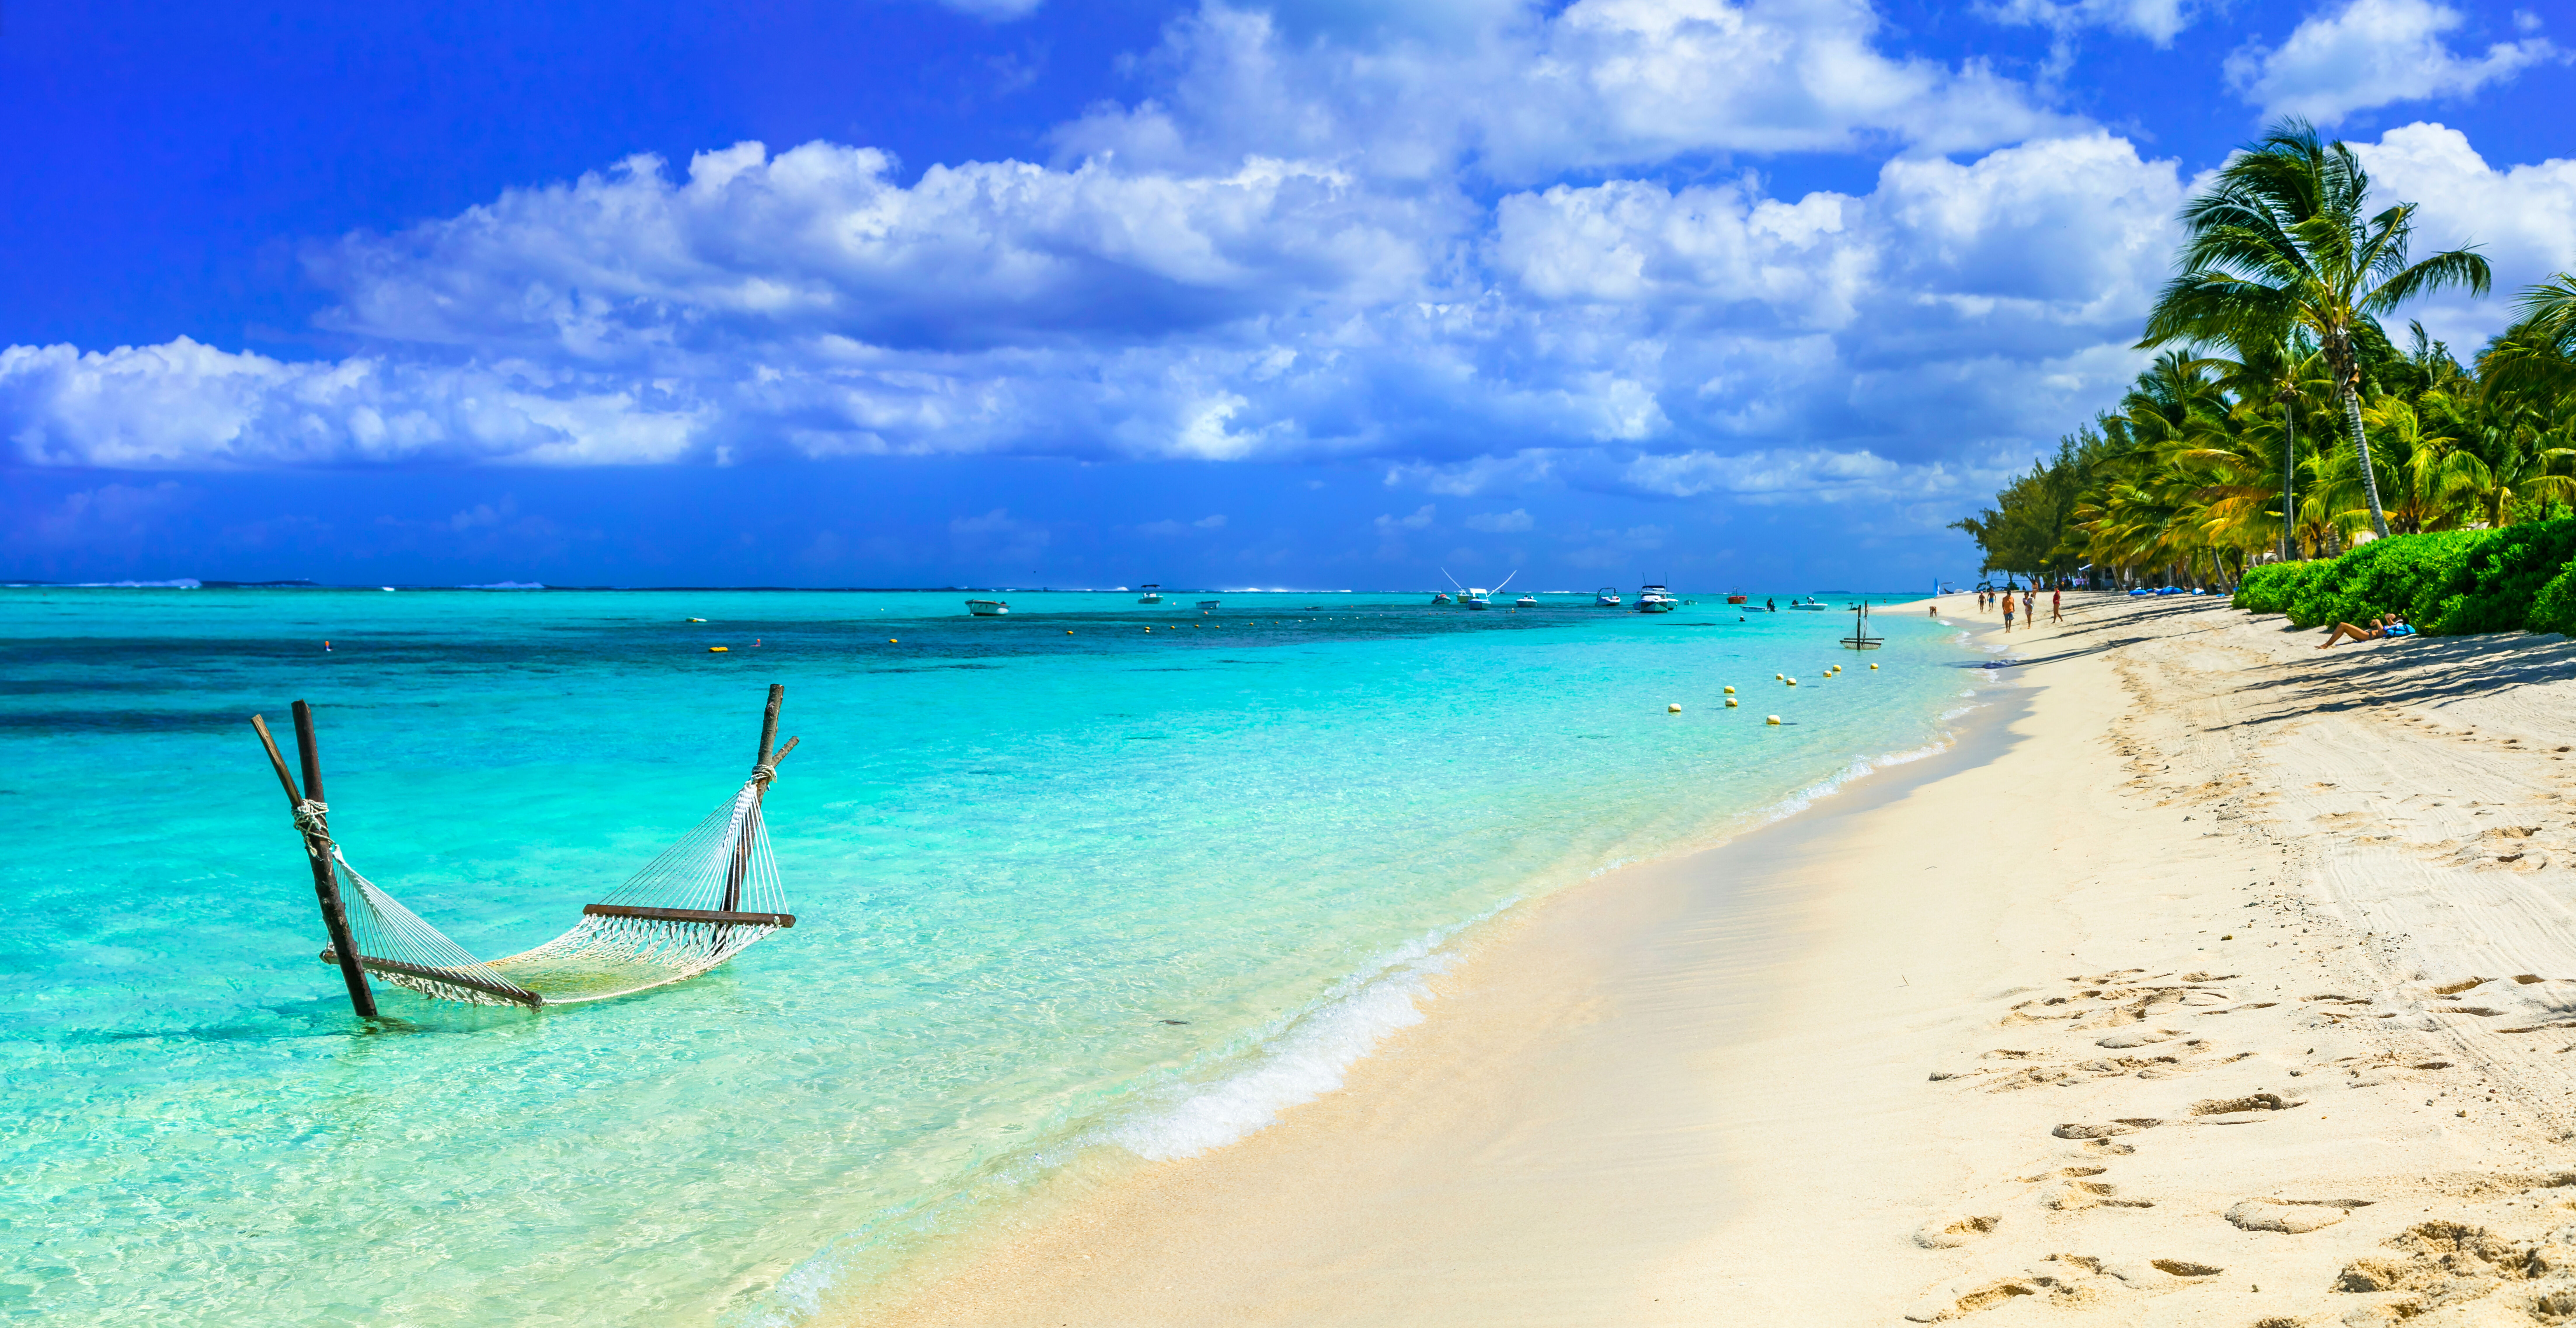 Lijm leren Begeleiden Vakantie Mauritius | Goedkope vakanties | Vakanties.nl